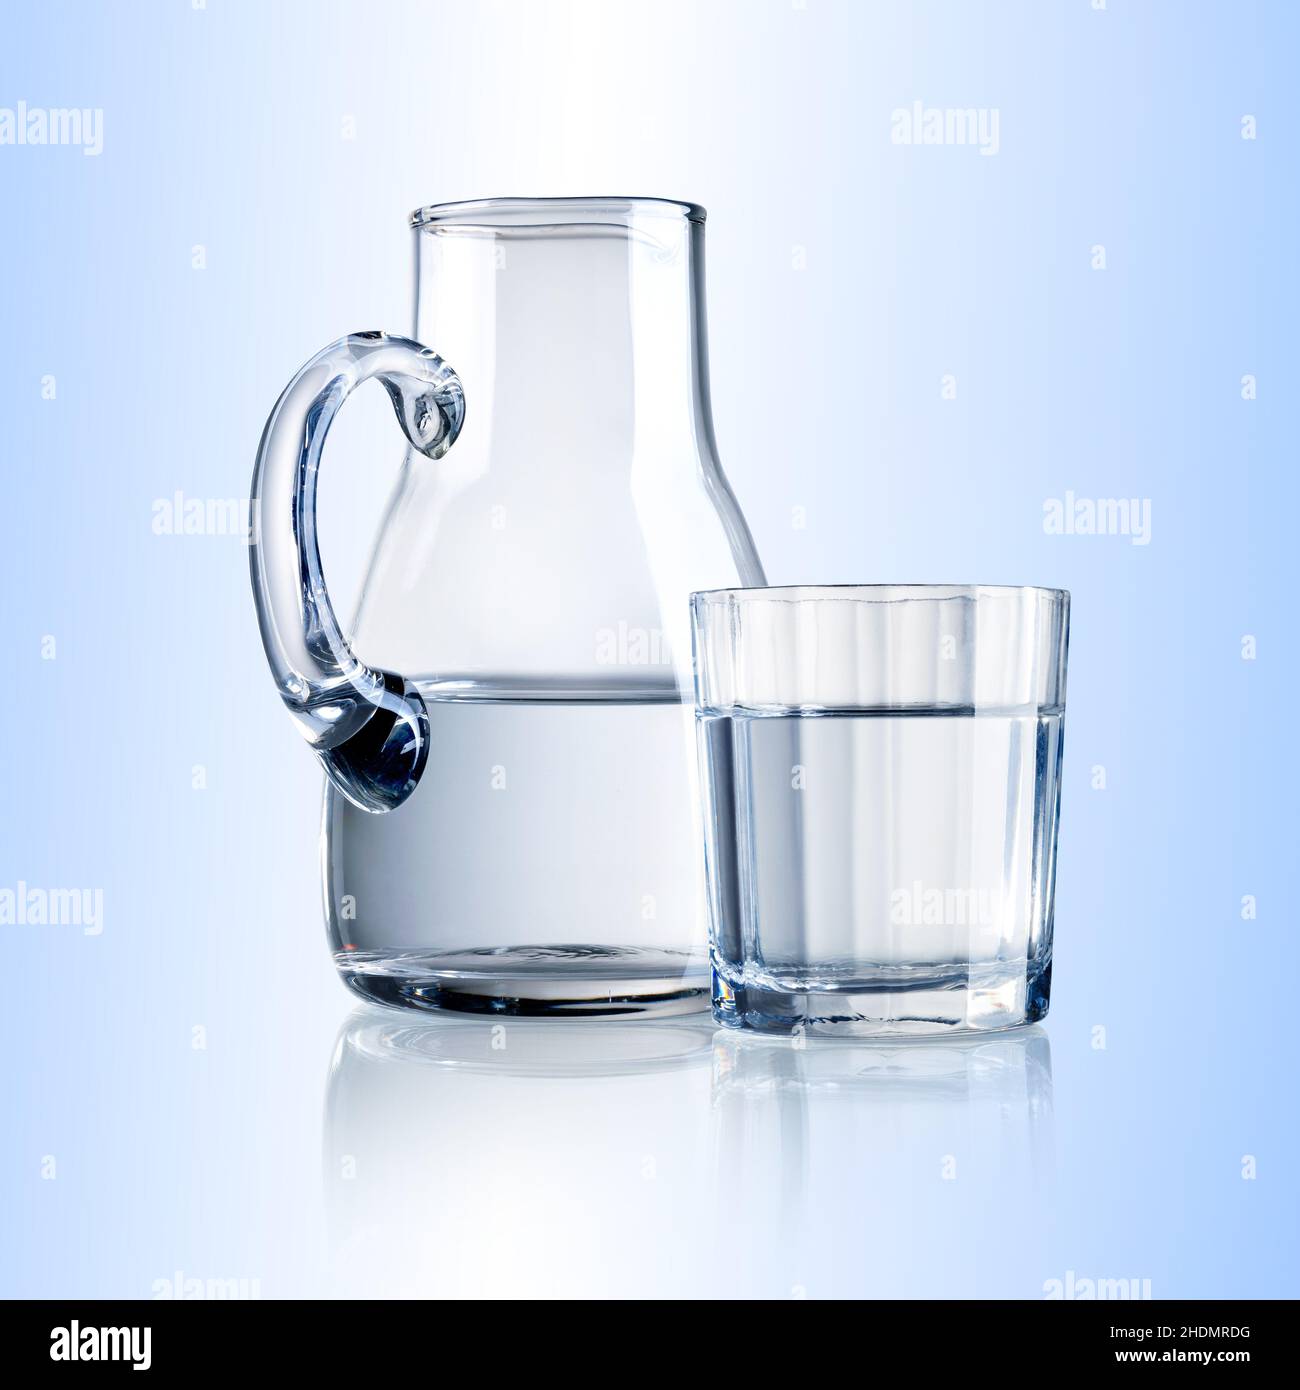 acqua minerale, acqua, caraffa, acqua minerale, caraffa d'acqua Foto stock  - Alamy